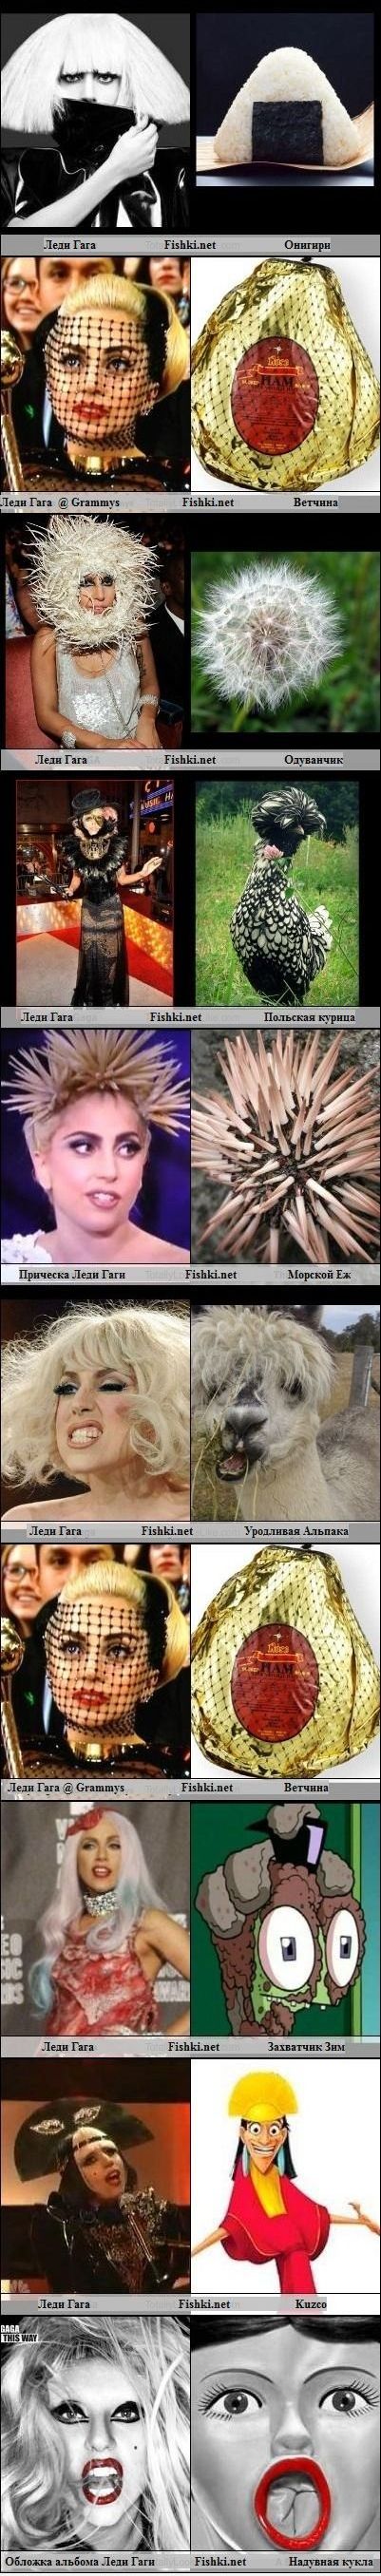 Забавные сходства с Леди Гага (2 фото)